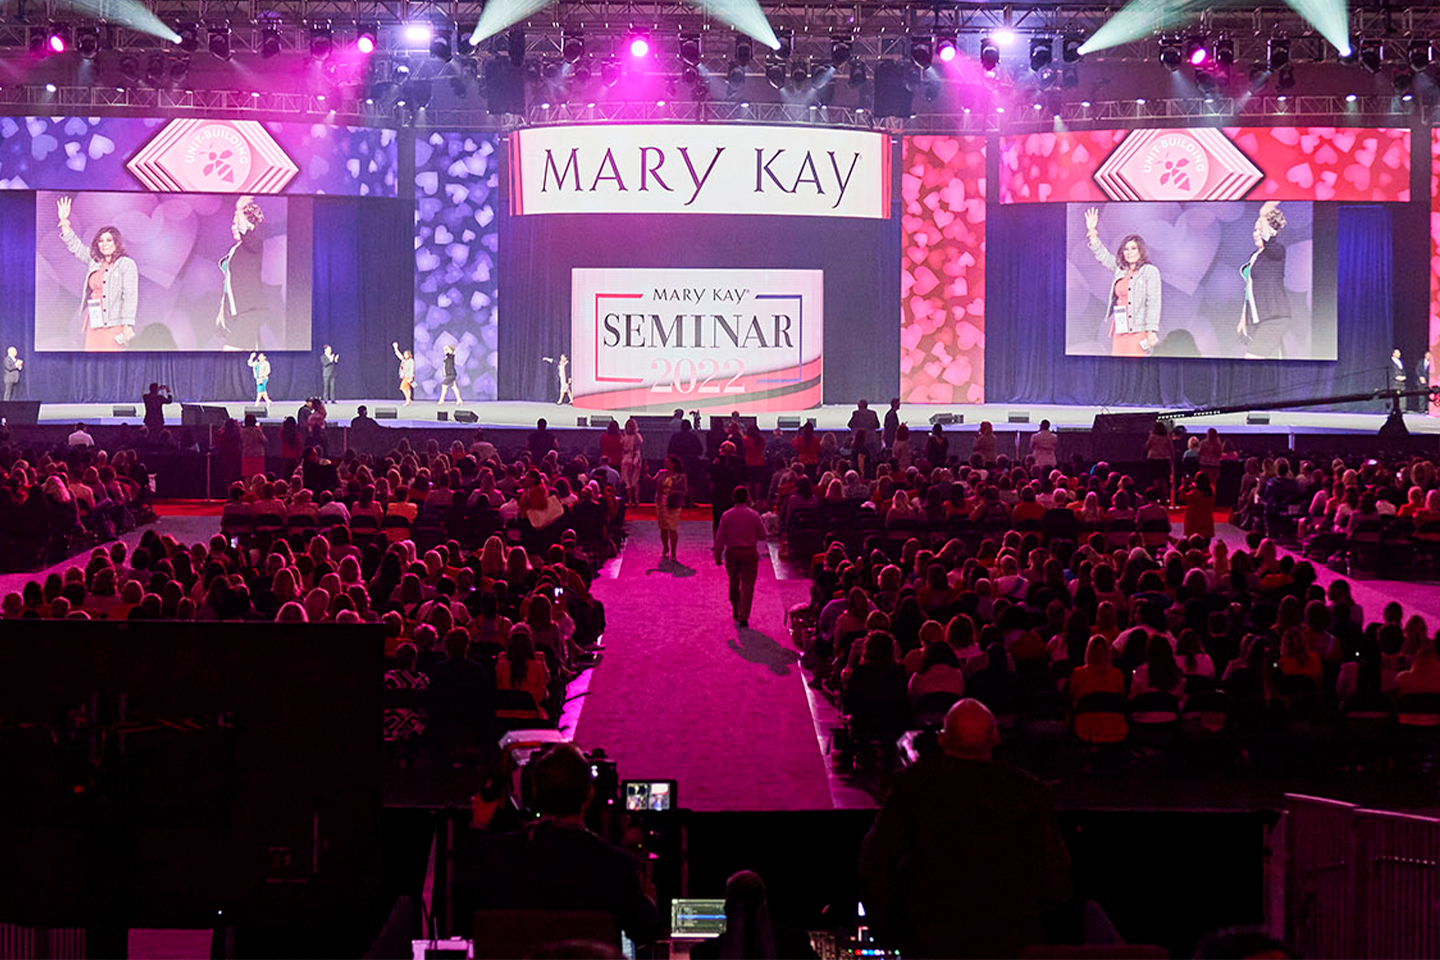 Conferenza di Mar Kay con persone che camminano sul palco